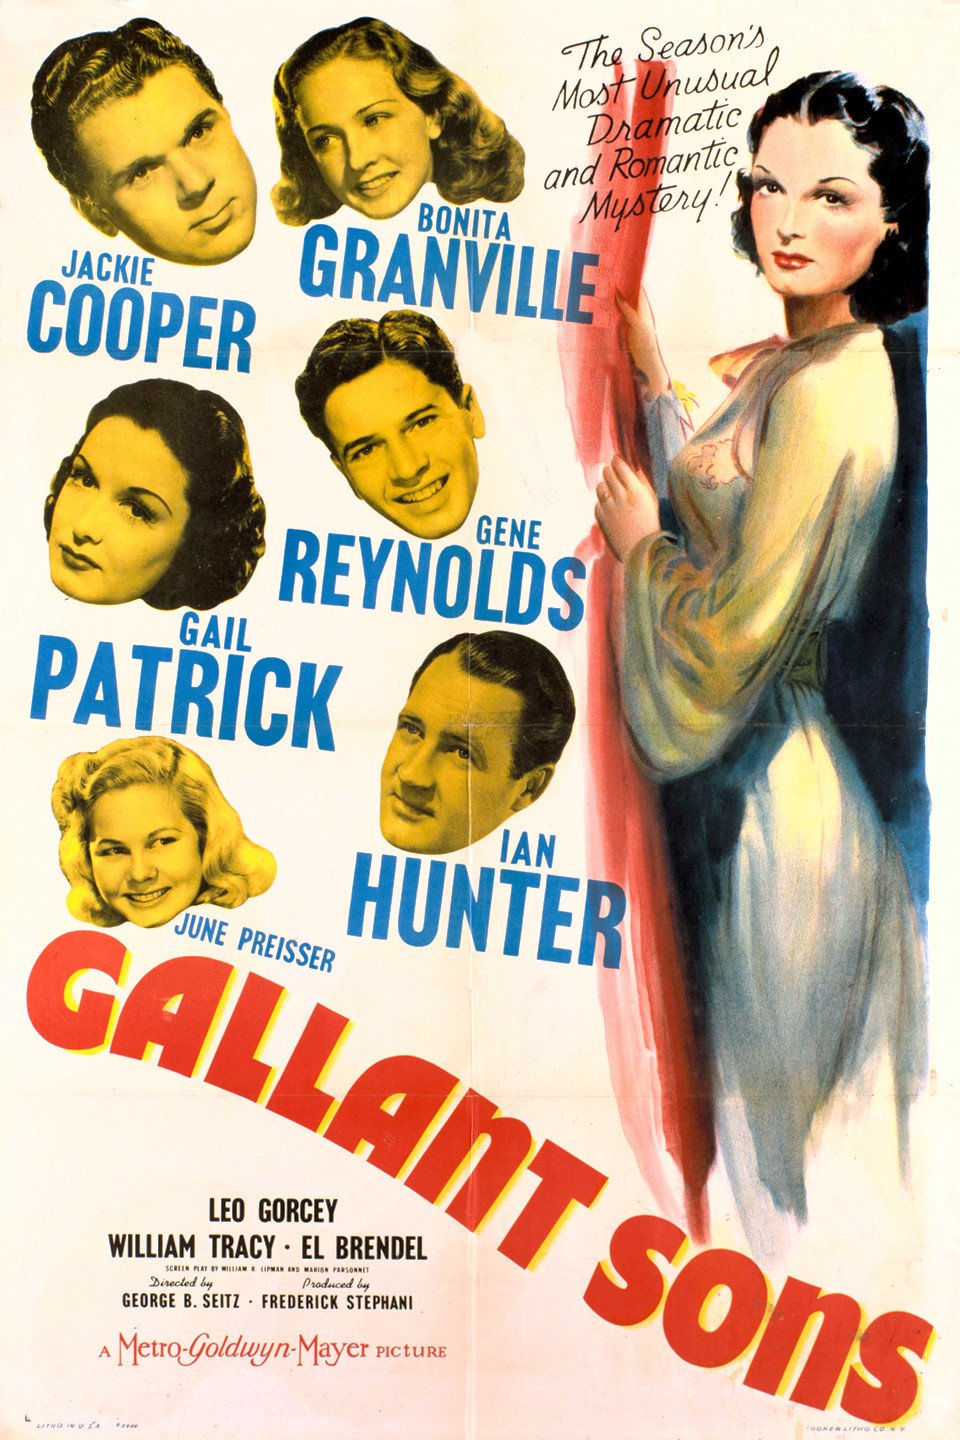 L'affiche du film Gallant Sons